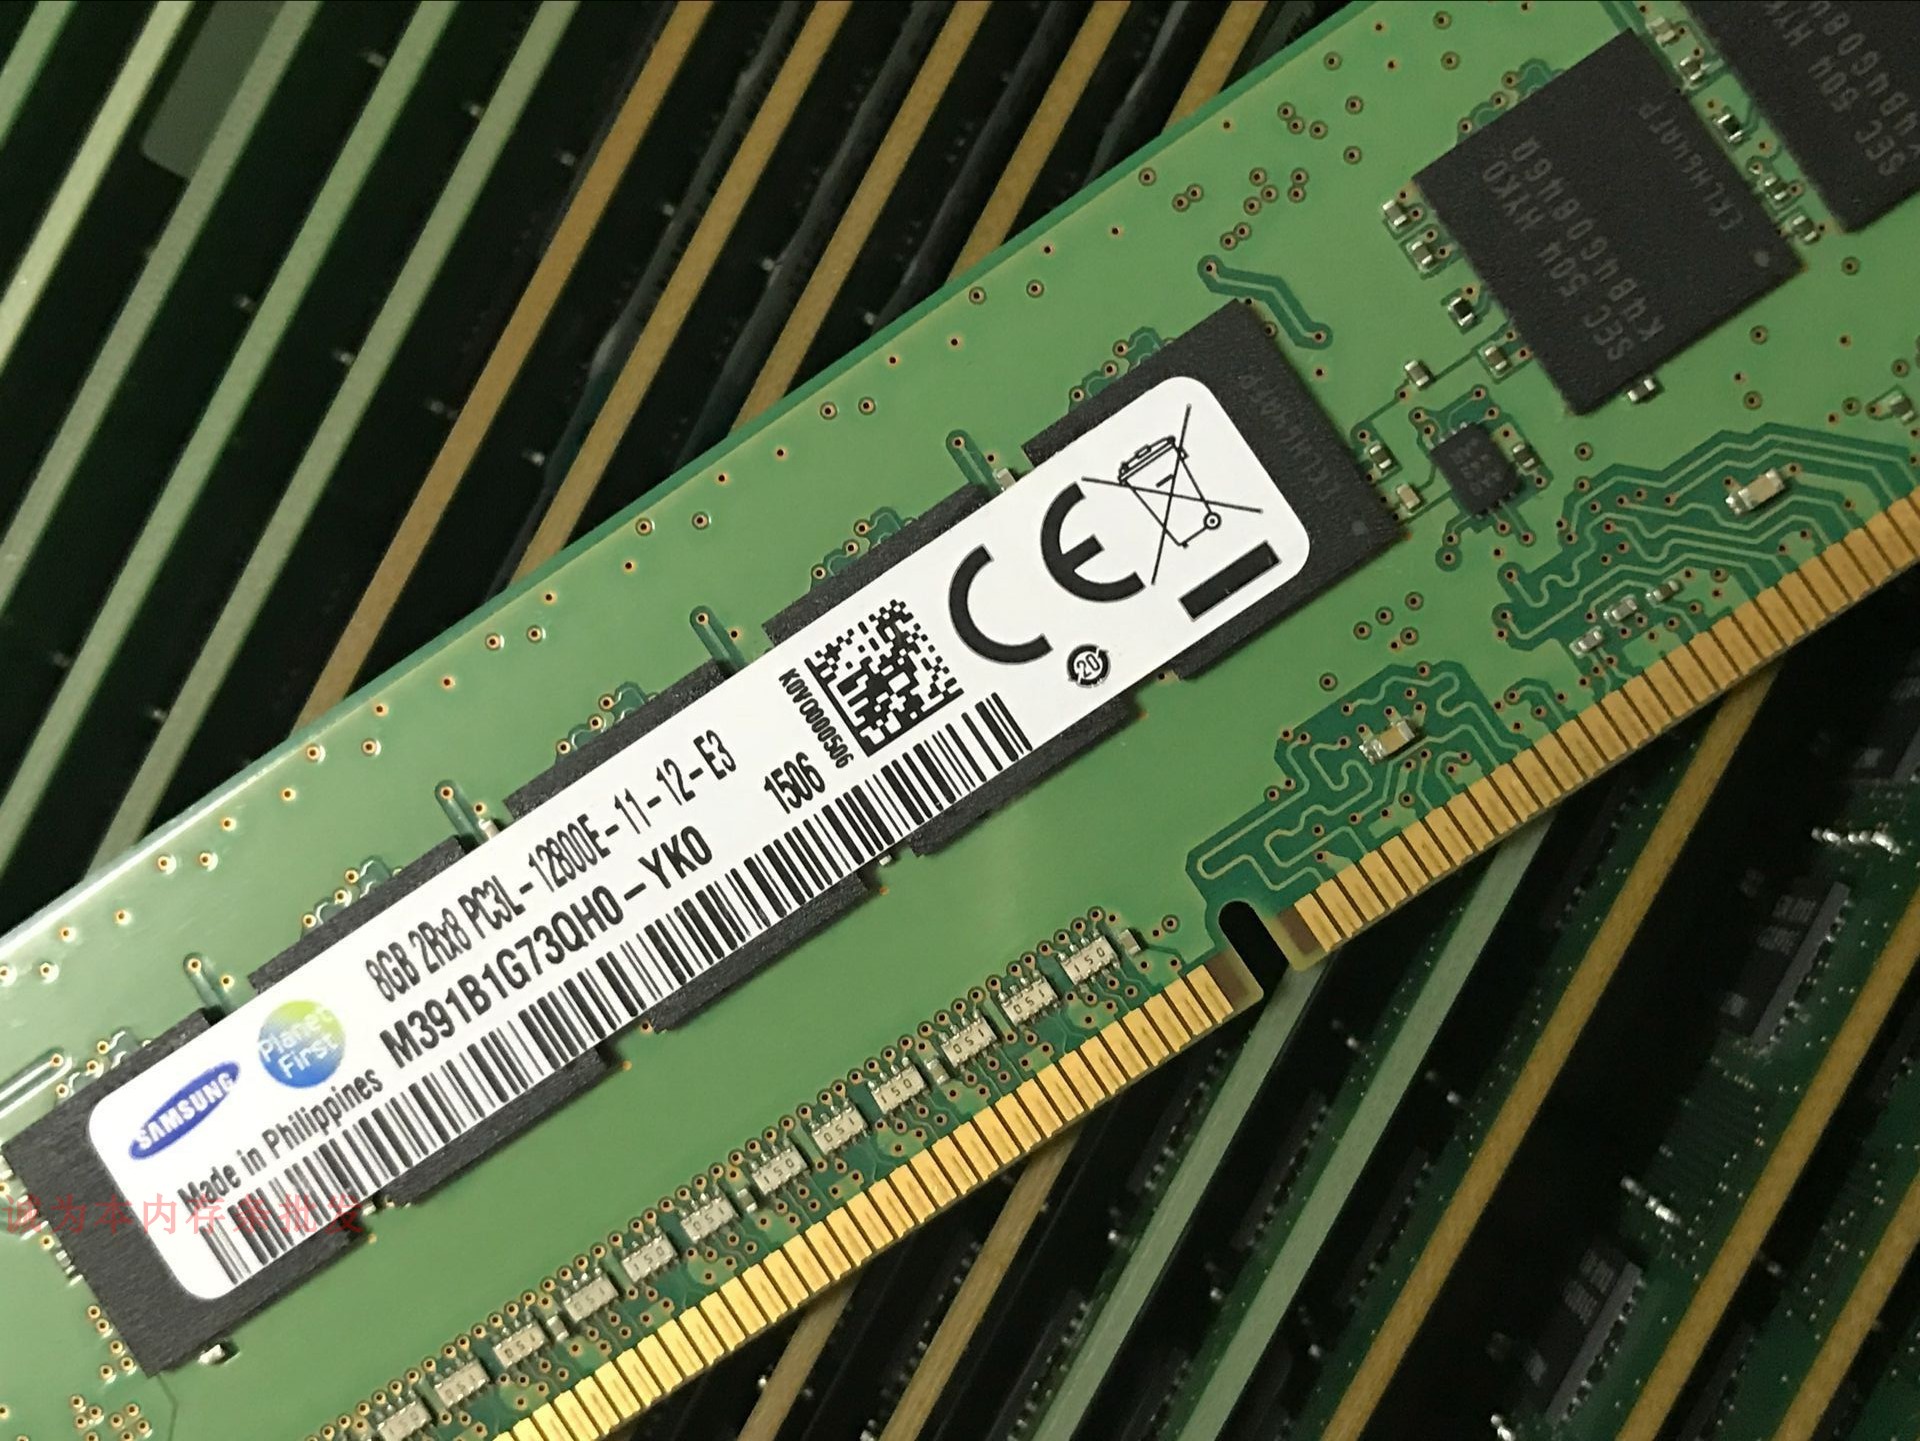 科技爱好者探讨 DDR4 内存的历史、现状与未来发展趋势  第1张